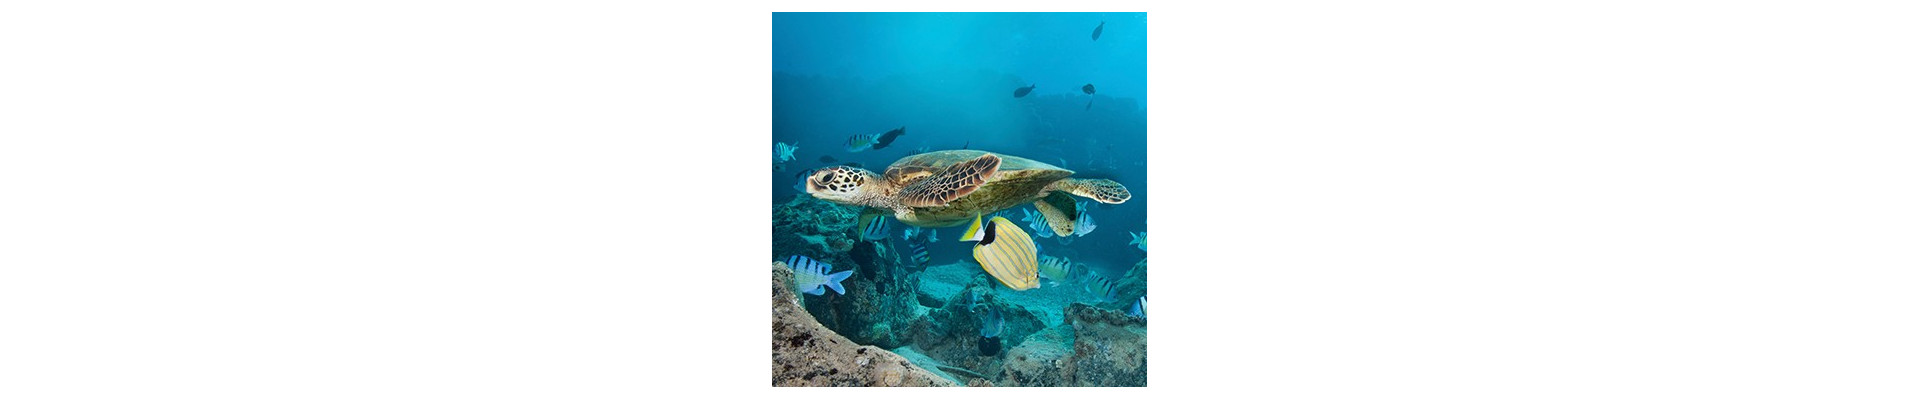 Filtros para habitats de tortugas y reptiles